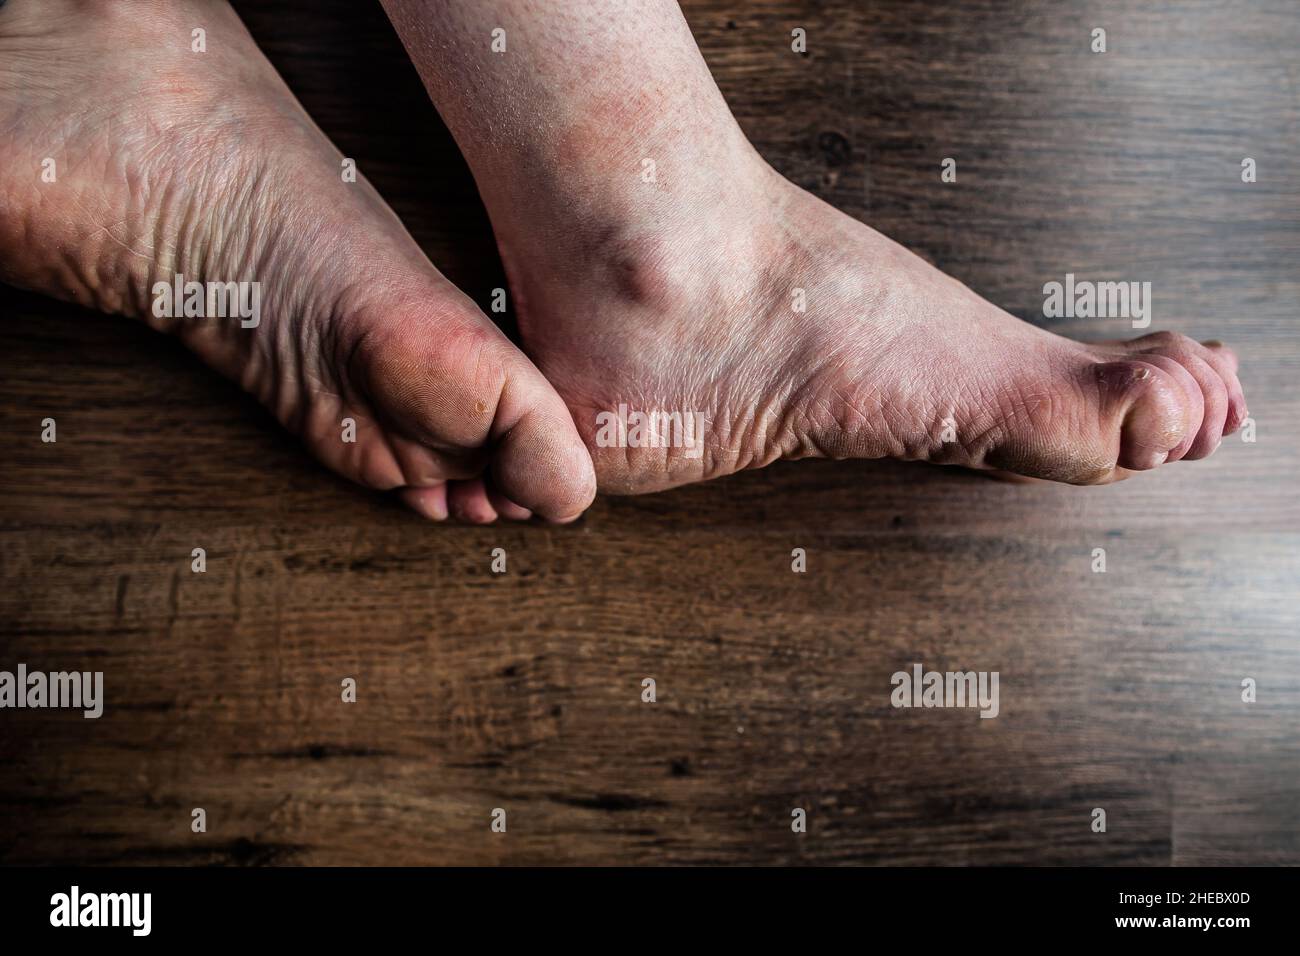 Piedi di persona con sindrome di Raynaud e Ehlers-Danlos (EDS) con dita gonfie, pelle irritata molto secca danneggiata dolore da malattia di fenomeno di Raynaud Foto Stock